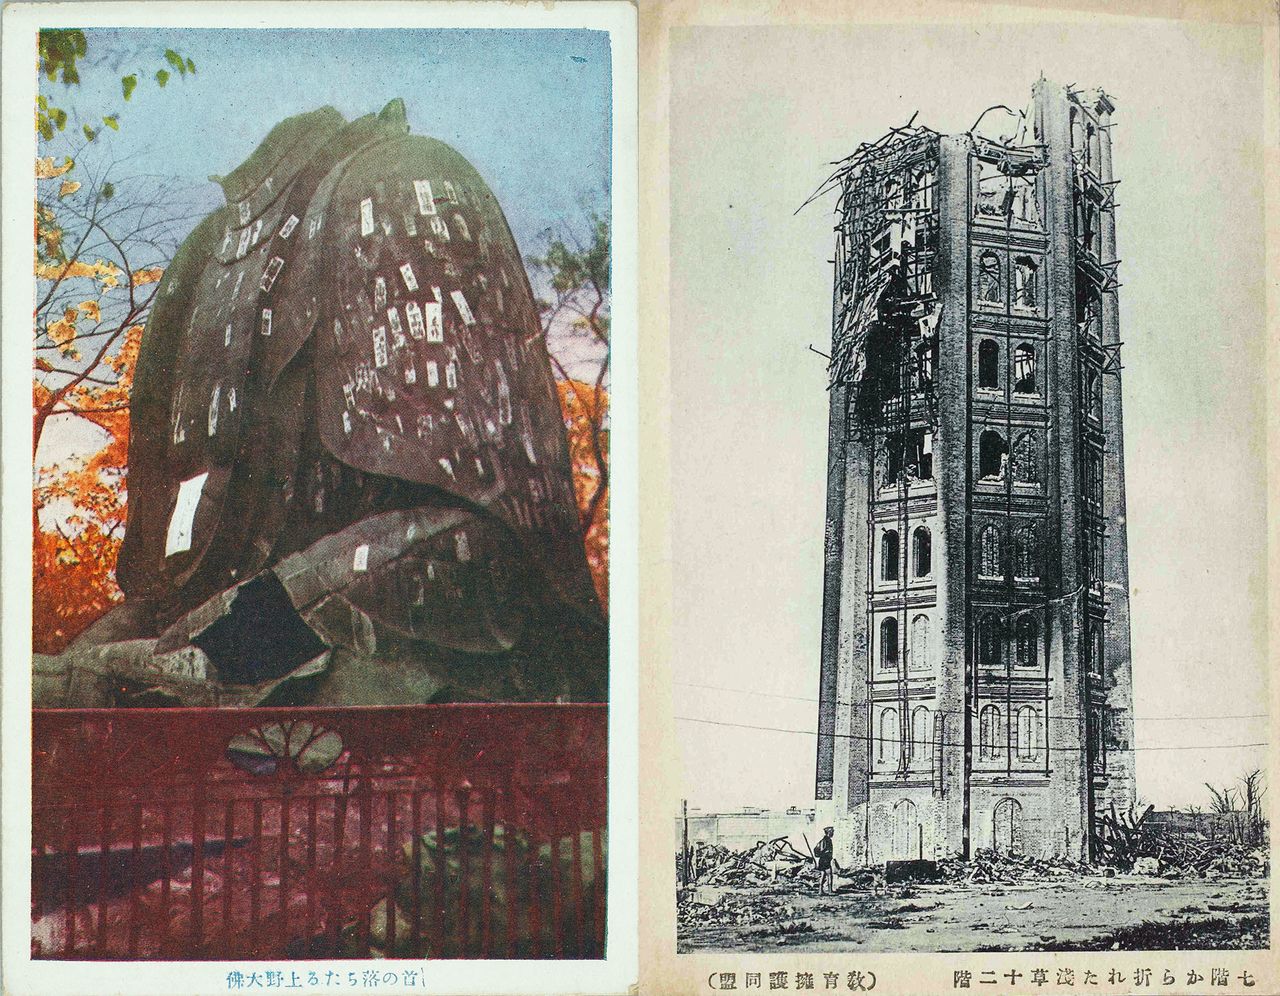 Dos de las postales que se emitieron después del Gran Terremoto de Kantō. A la izquierda, el Gran Buda del parque de Ueno. A la derecha, la torre Ryōunkaku. (Colección de la Biblioteca Central Metropolitana de Tokio)